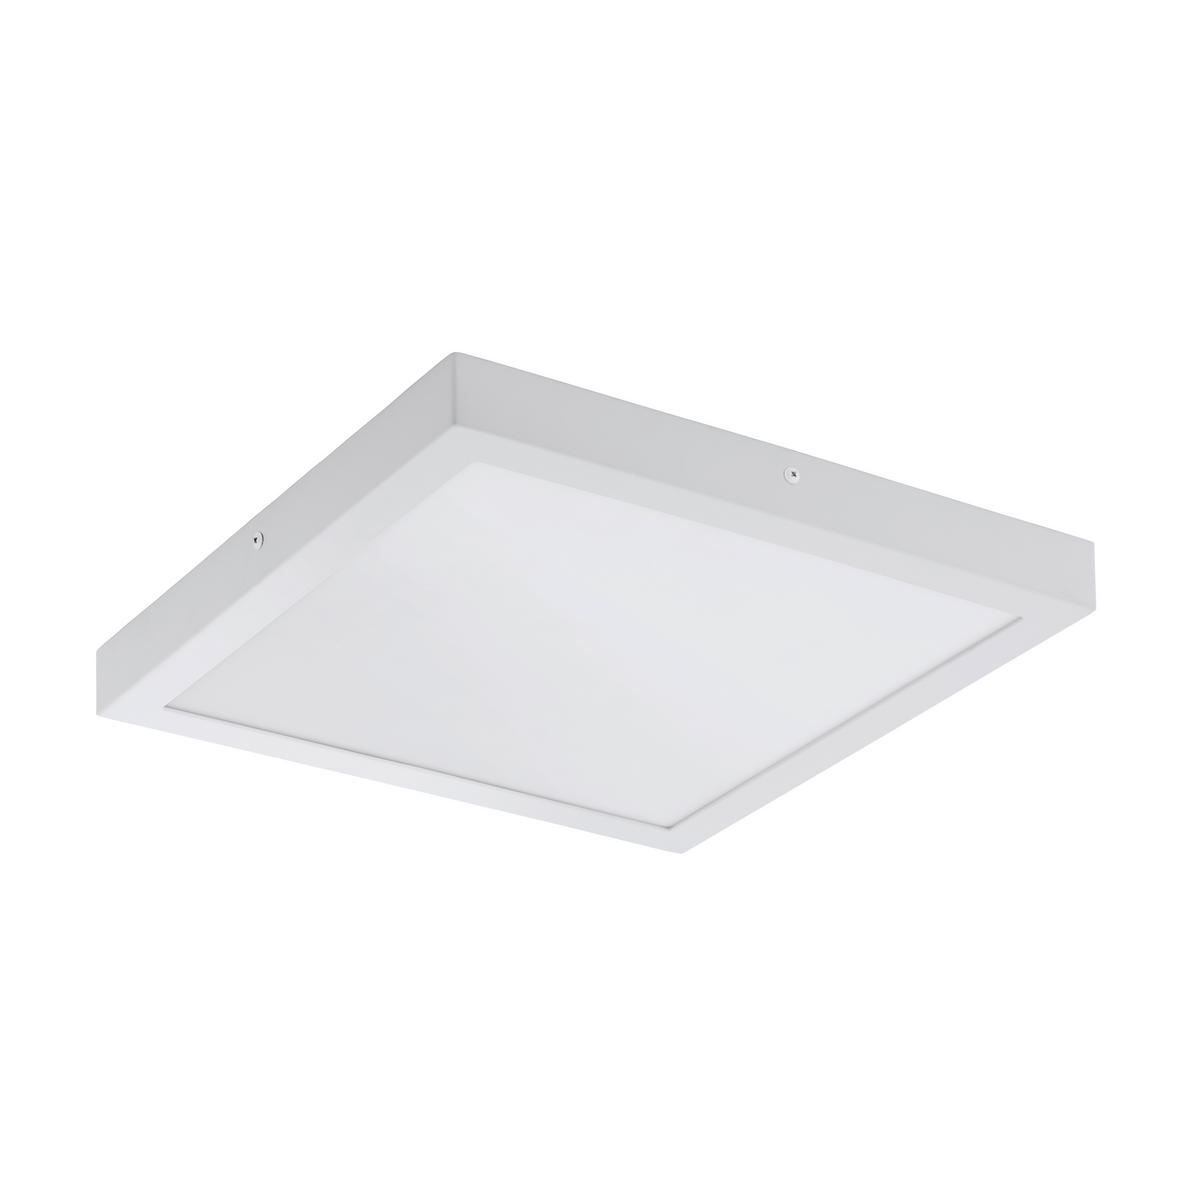 AUFBAULEUCHTE FUEVA I 40/40/3 cm   - Weiß, Design, Kunststoff/Metall (40/40/3cm) - Eglo